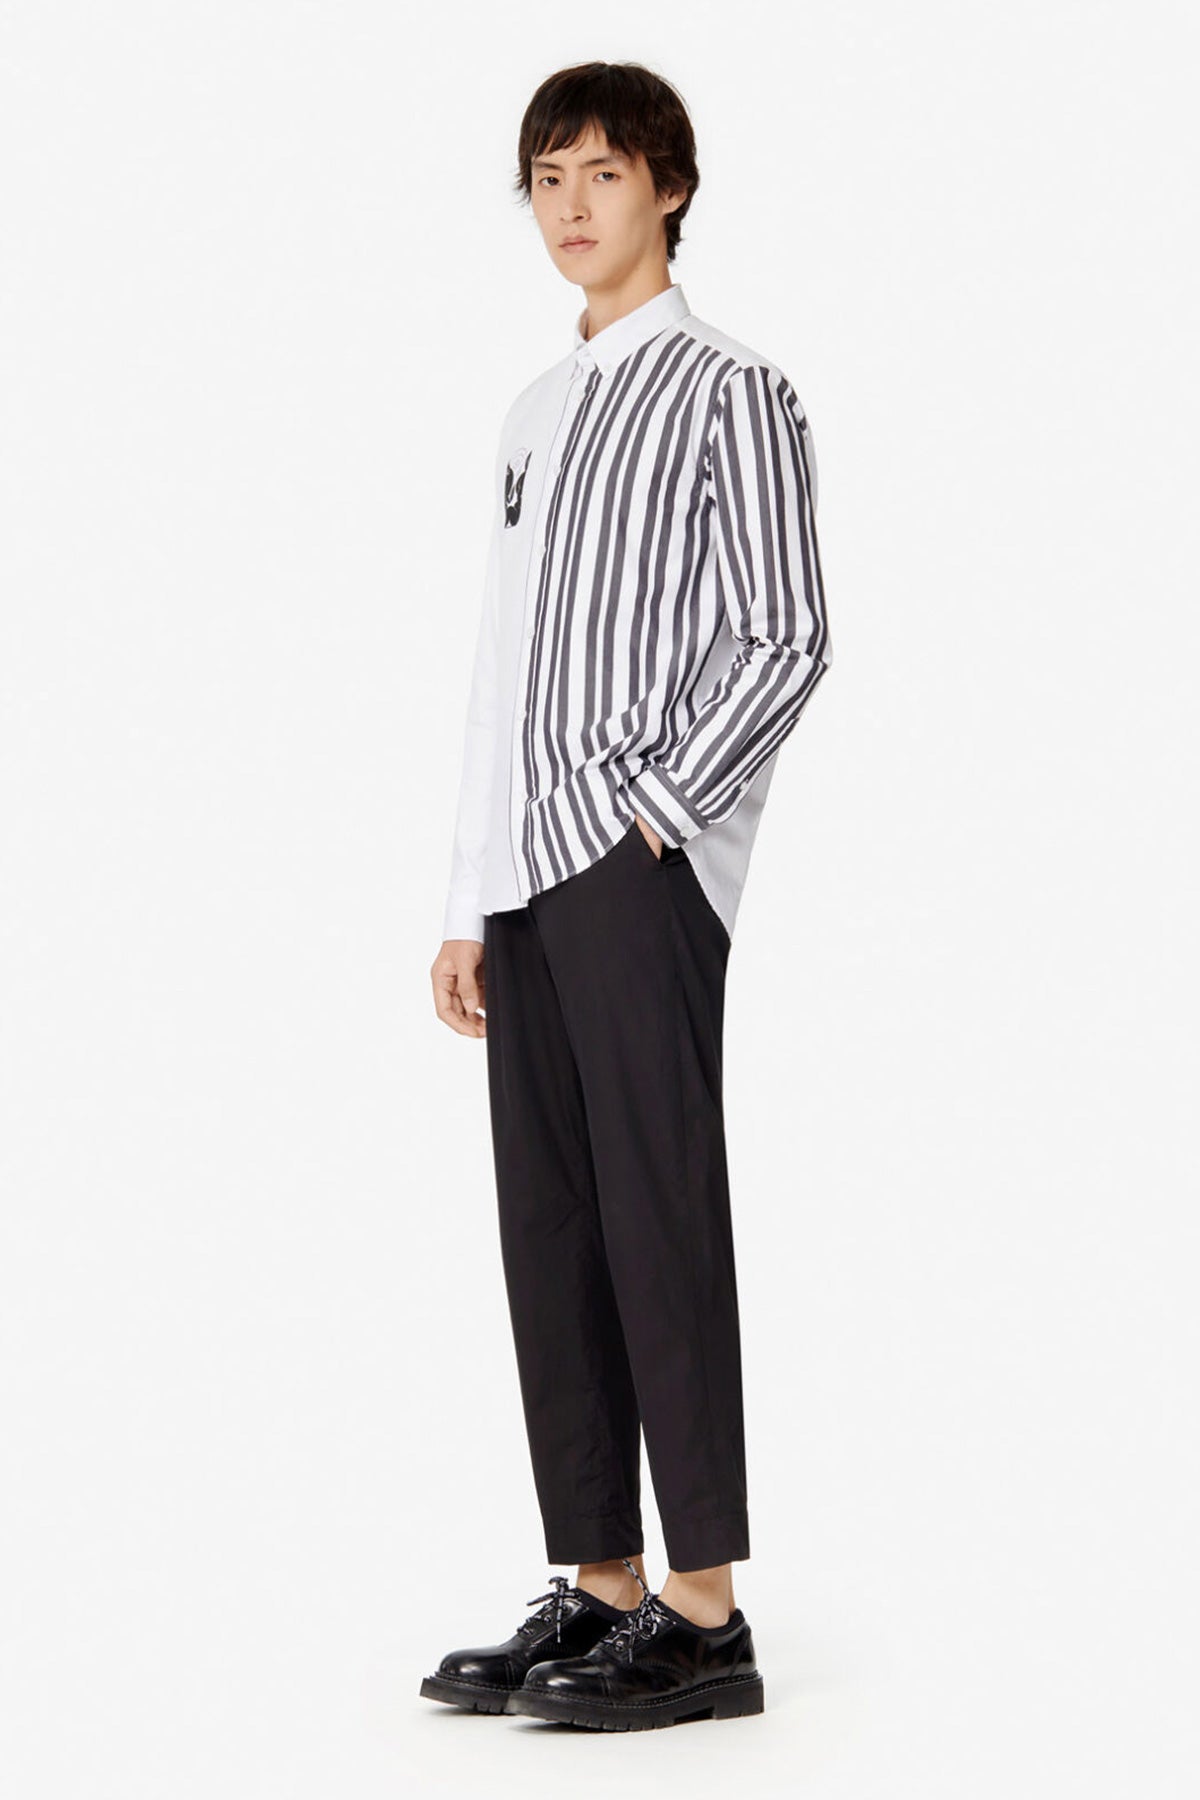 Kenzo Pantolon-Libas Trendy Fashion Store